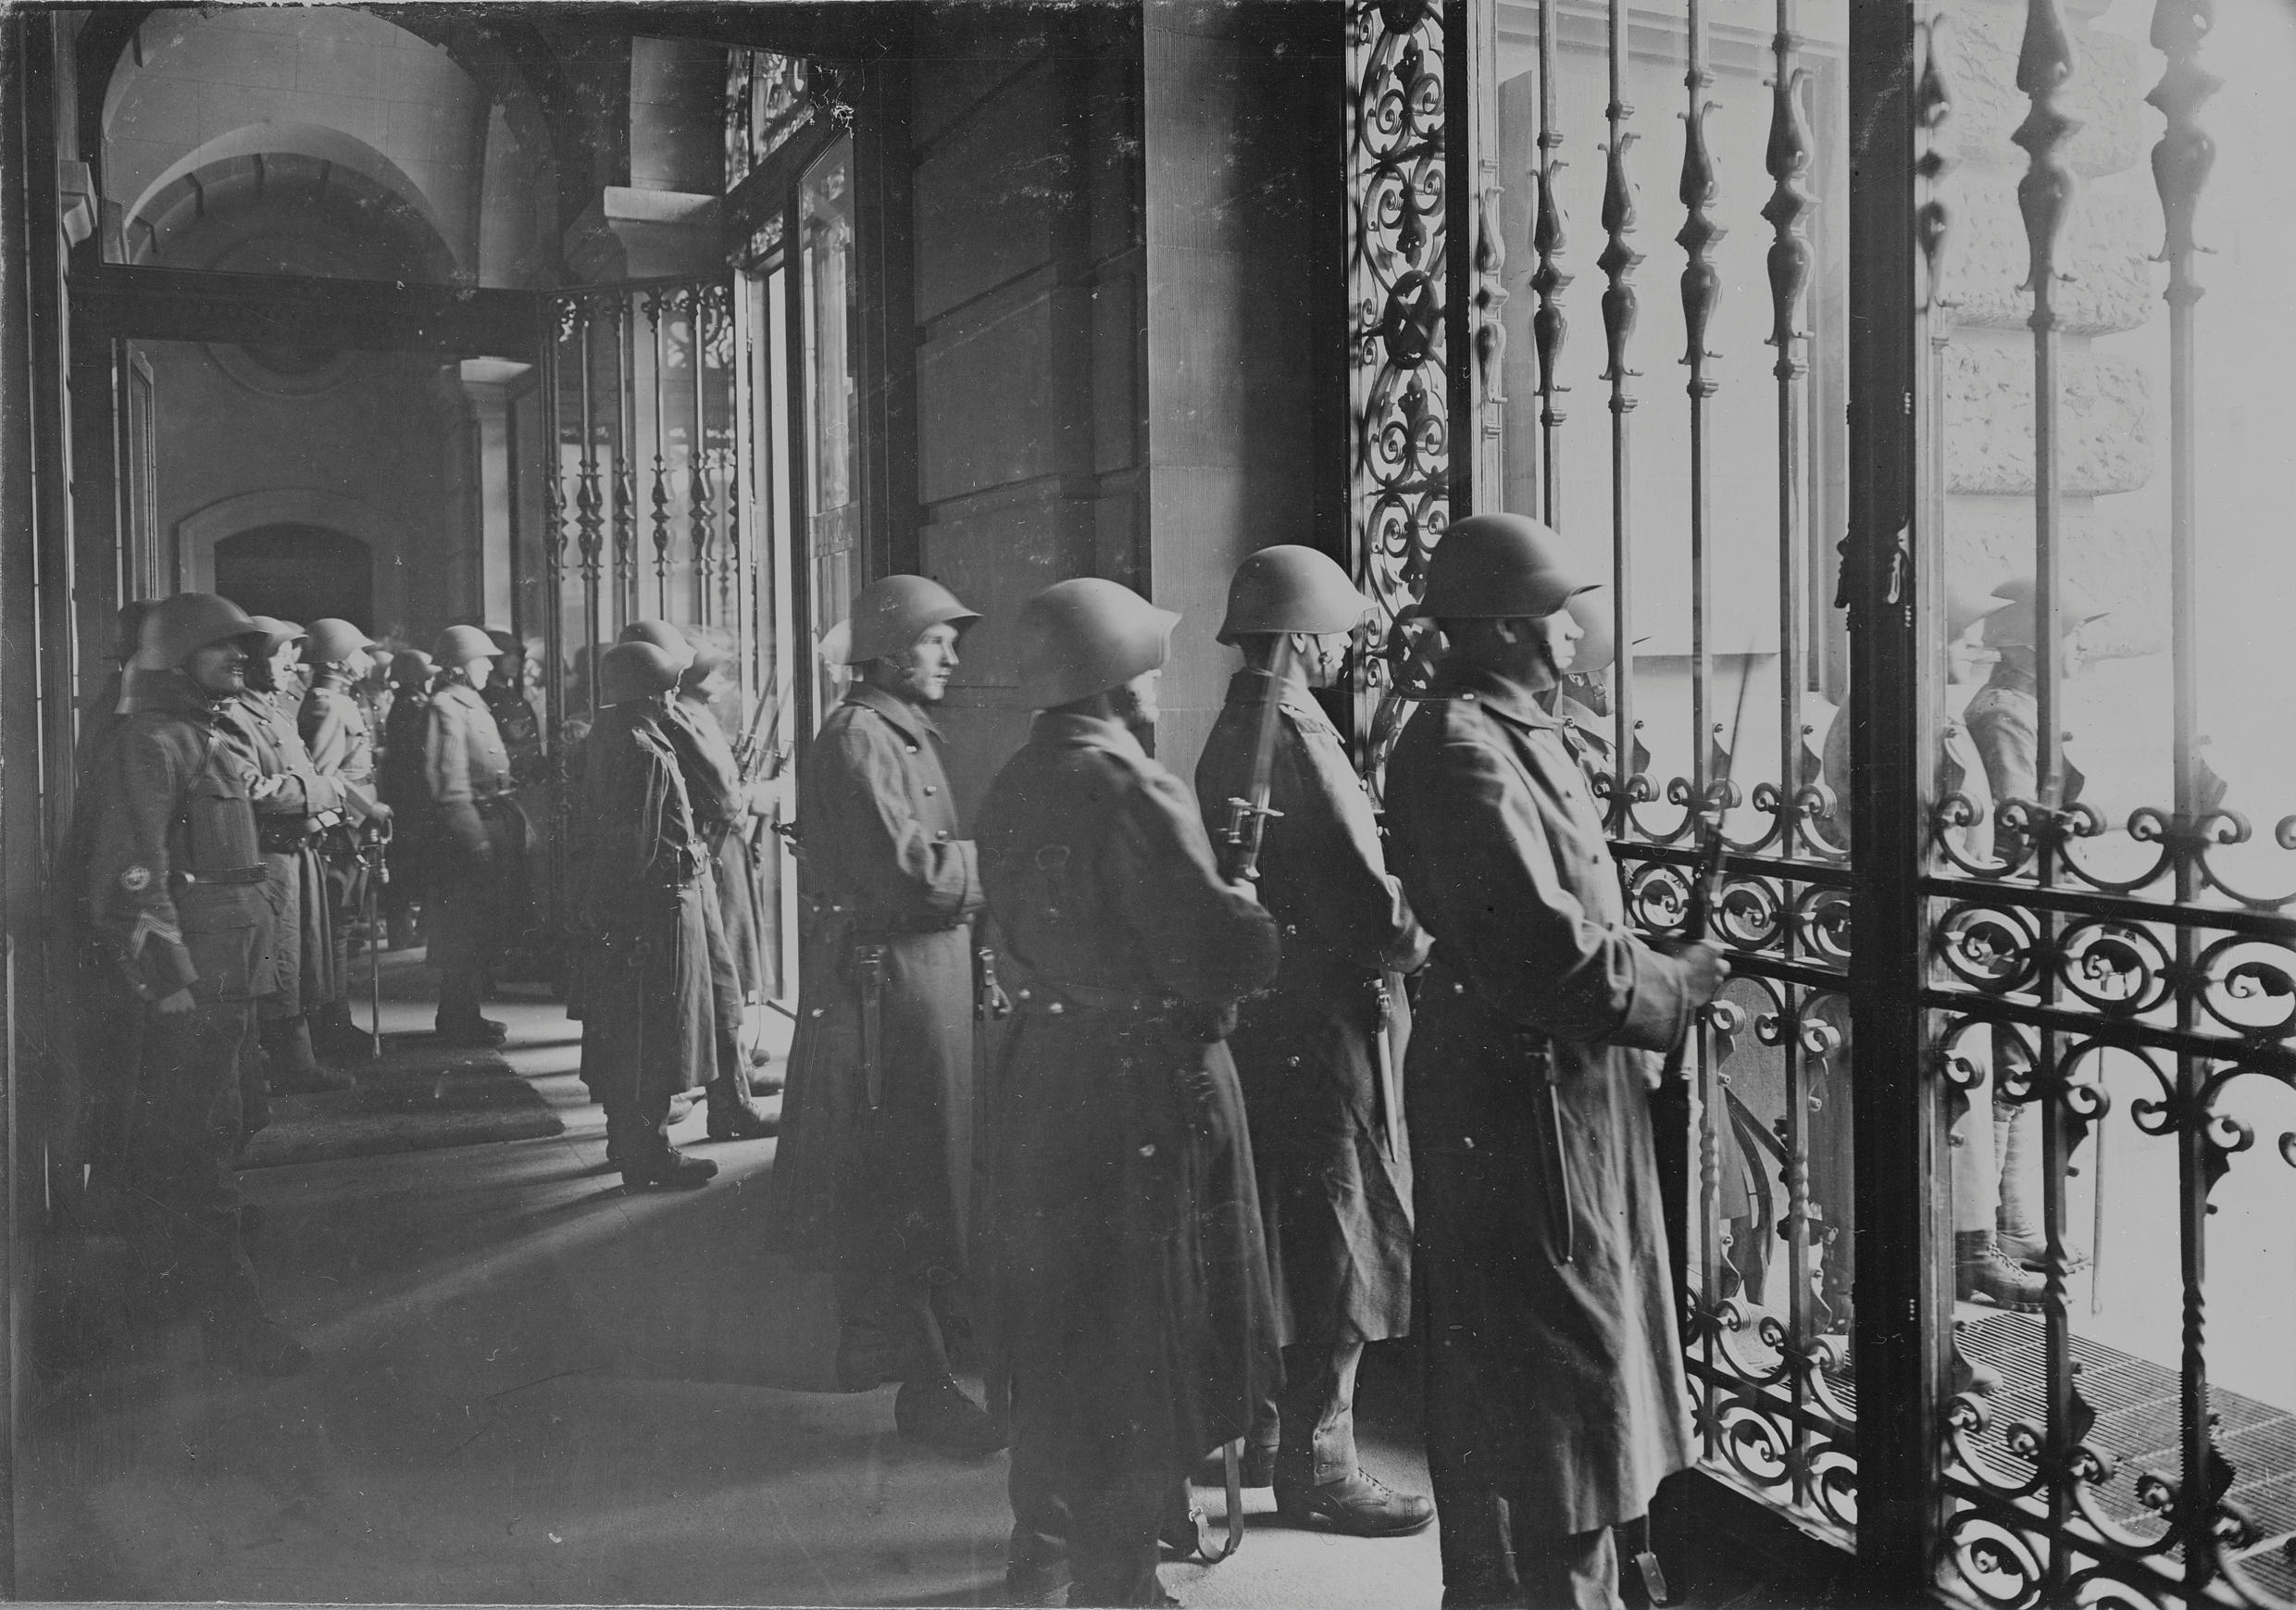 Soldados armados vigiando entrada de prédio